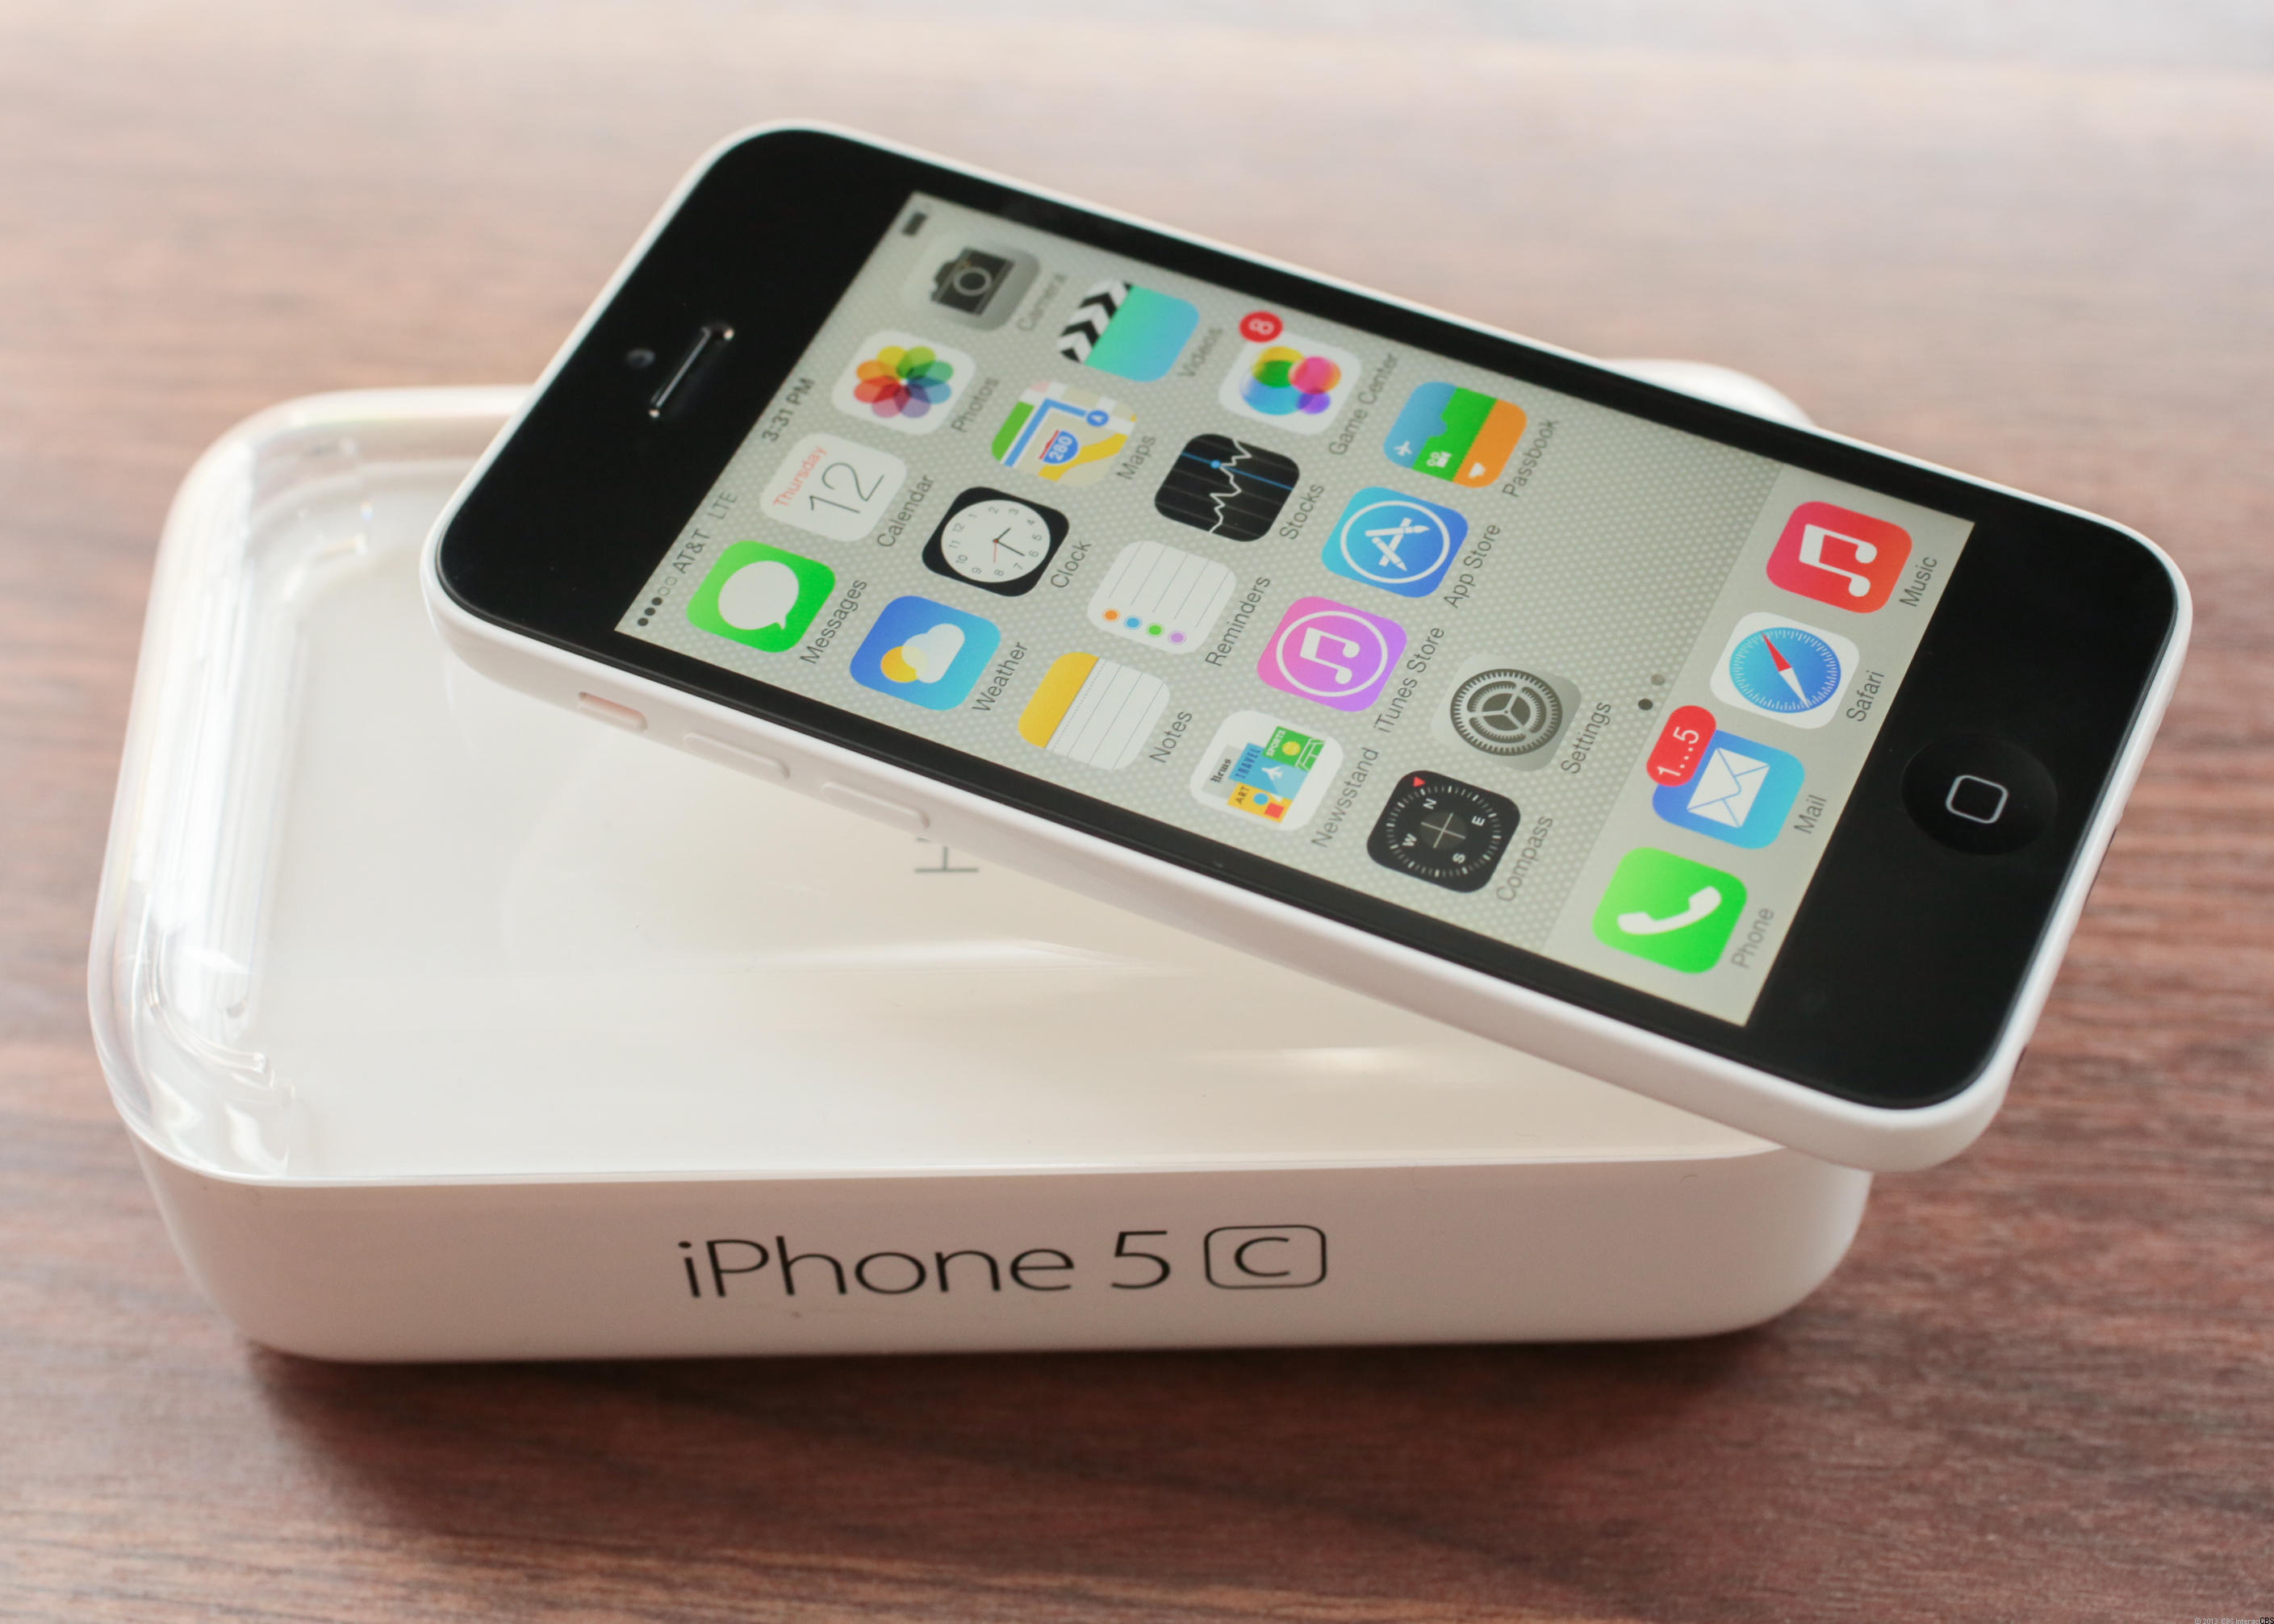 lichten bijnaam arm 5 tips for using new iPhone 5C, iPhone 5S, or Apple iOS 7 - CBS News